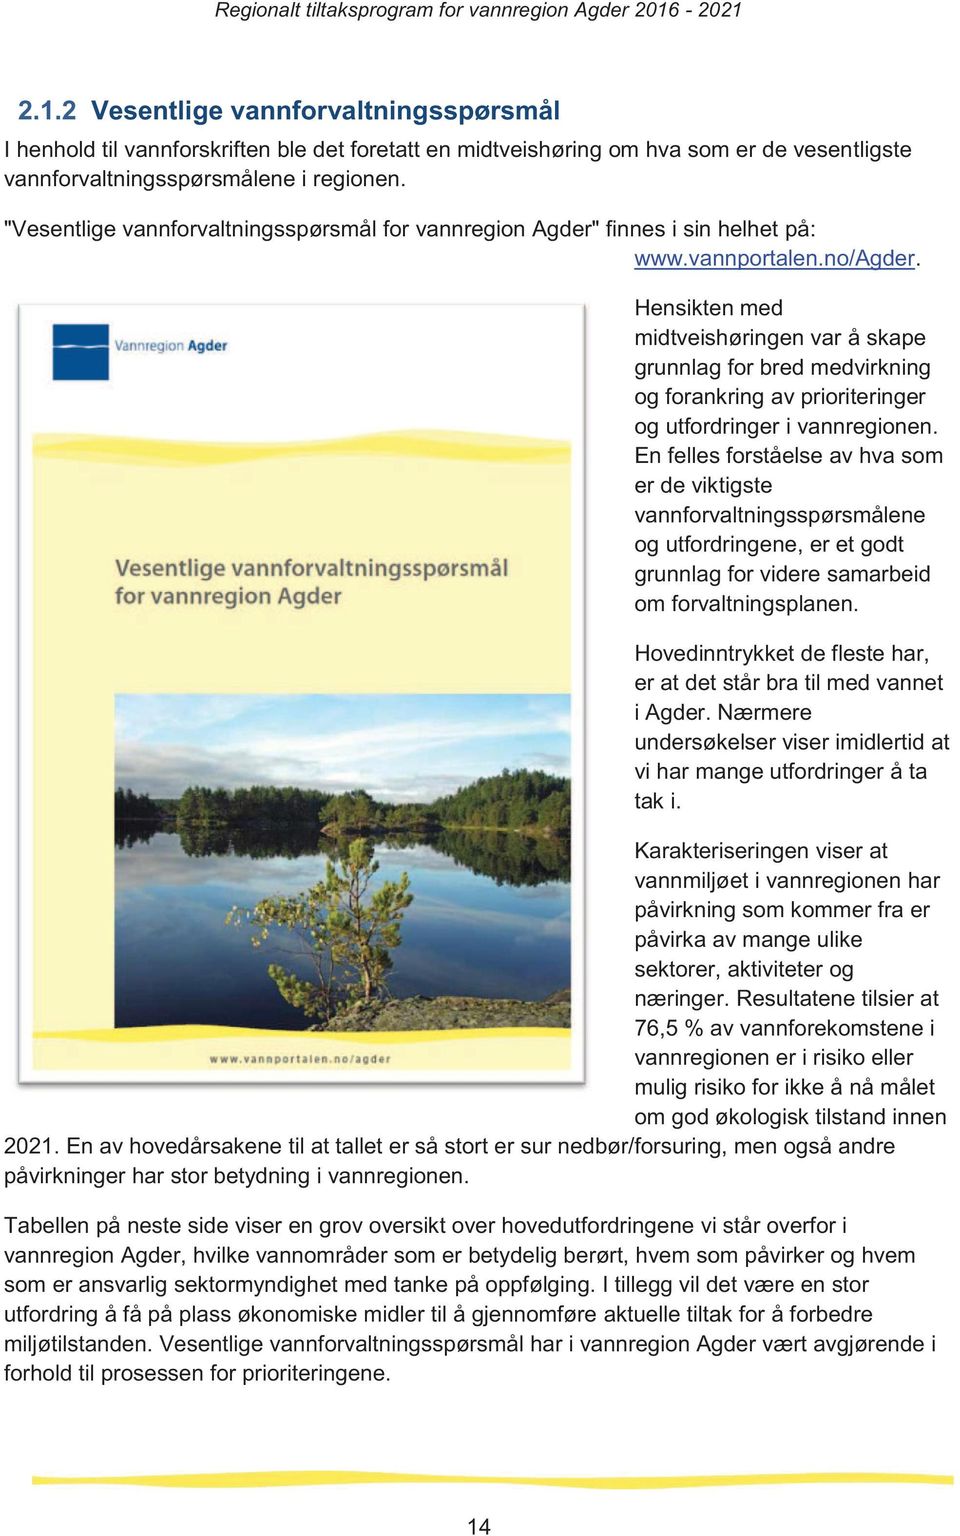 "Vesentlige vannforvaltningssprsml for vannregion Agder" finnes i sin helhet p: www.vannportalen.no/agder.